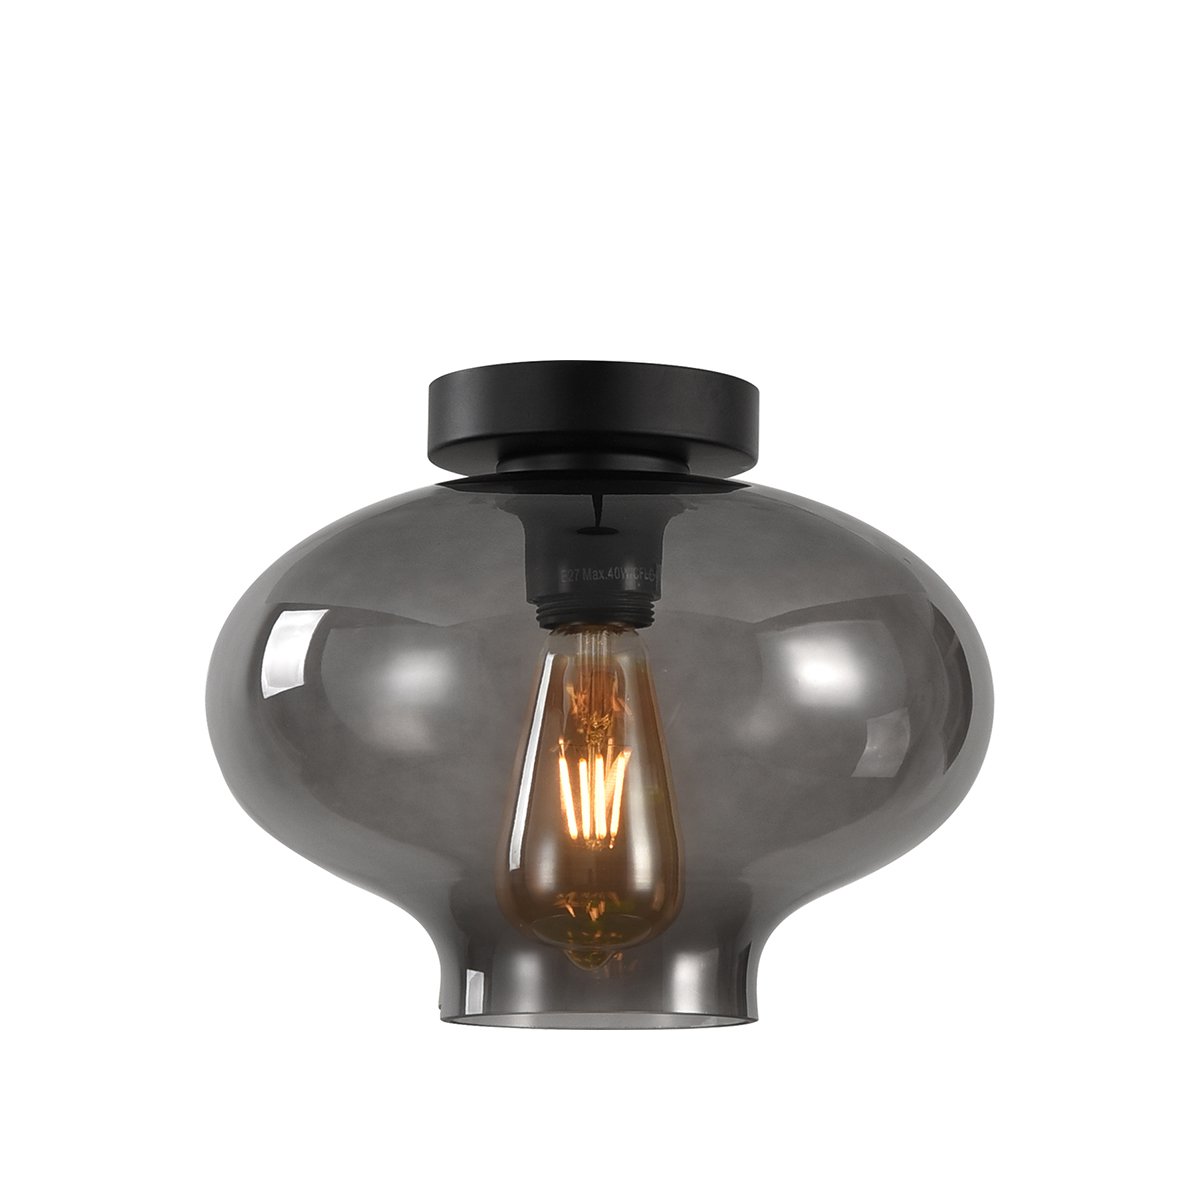 WC Verlichting Plafondlamp retro rookglas Dozza - Ø 26.5 cm